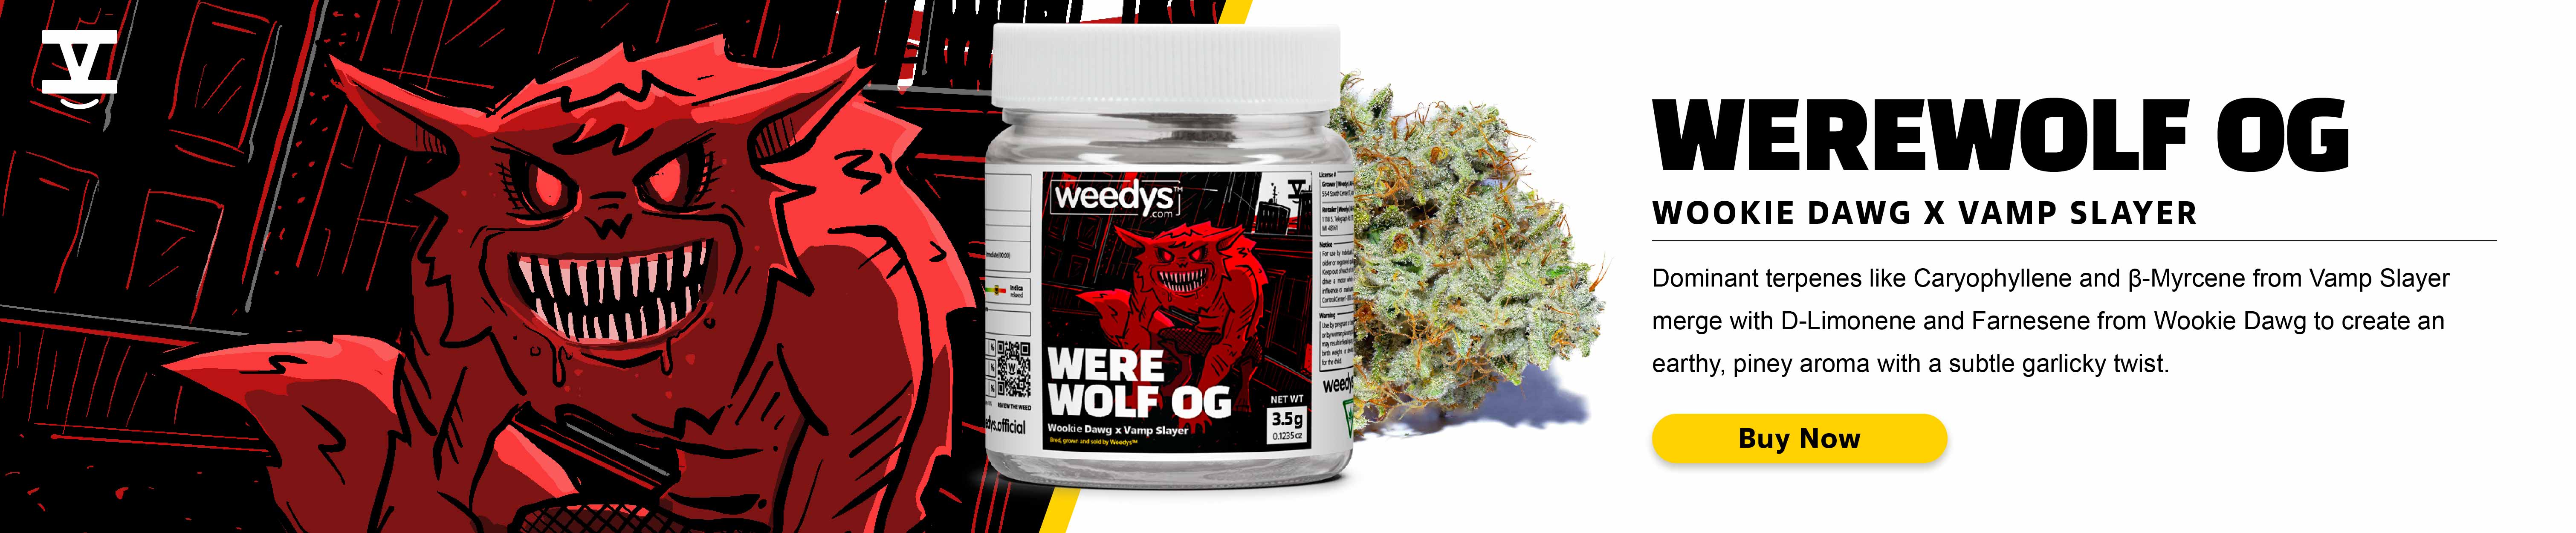 Weedys Werewolf OG Desktop Banner